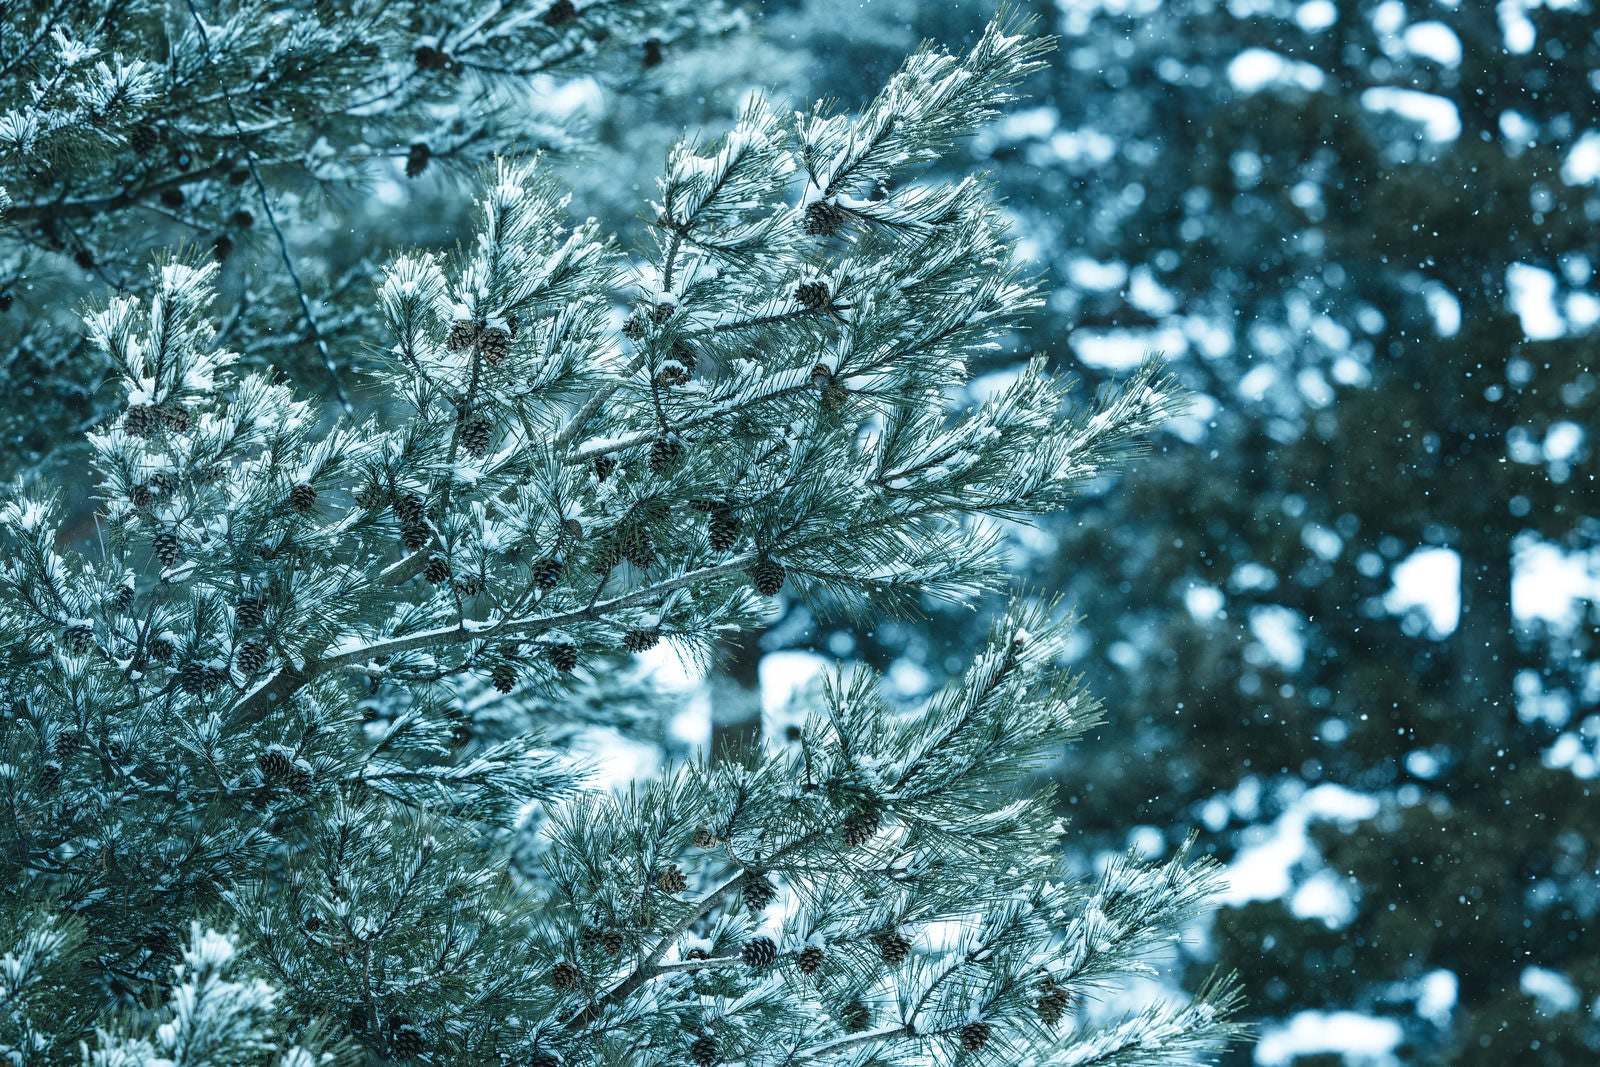 「松と松ぼっくりに雪が積もる」の写真